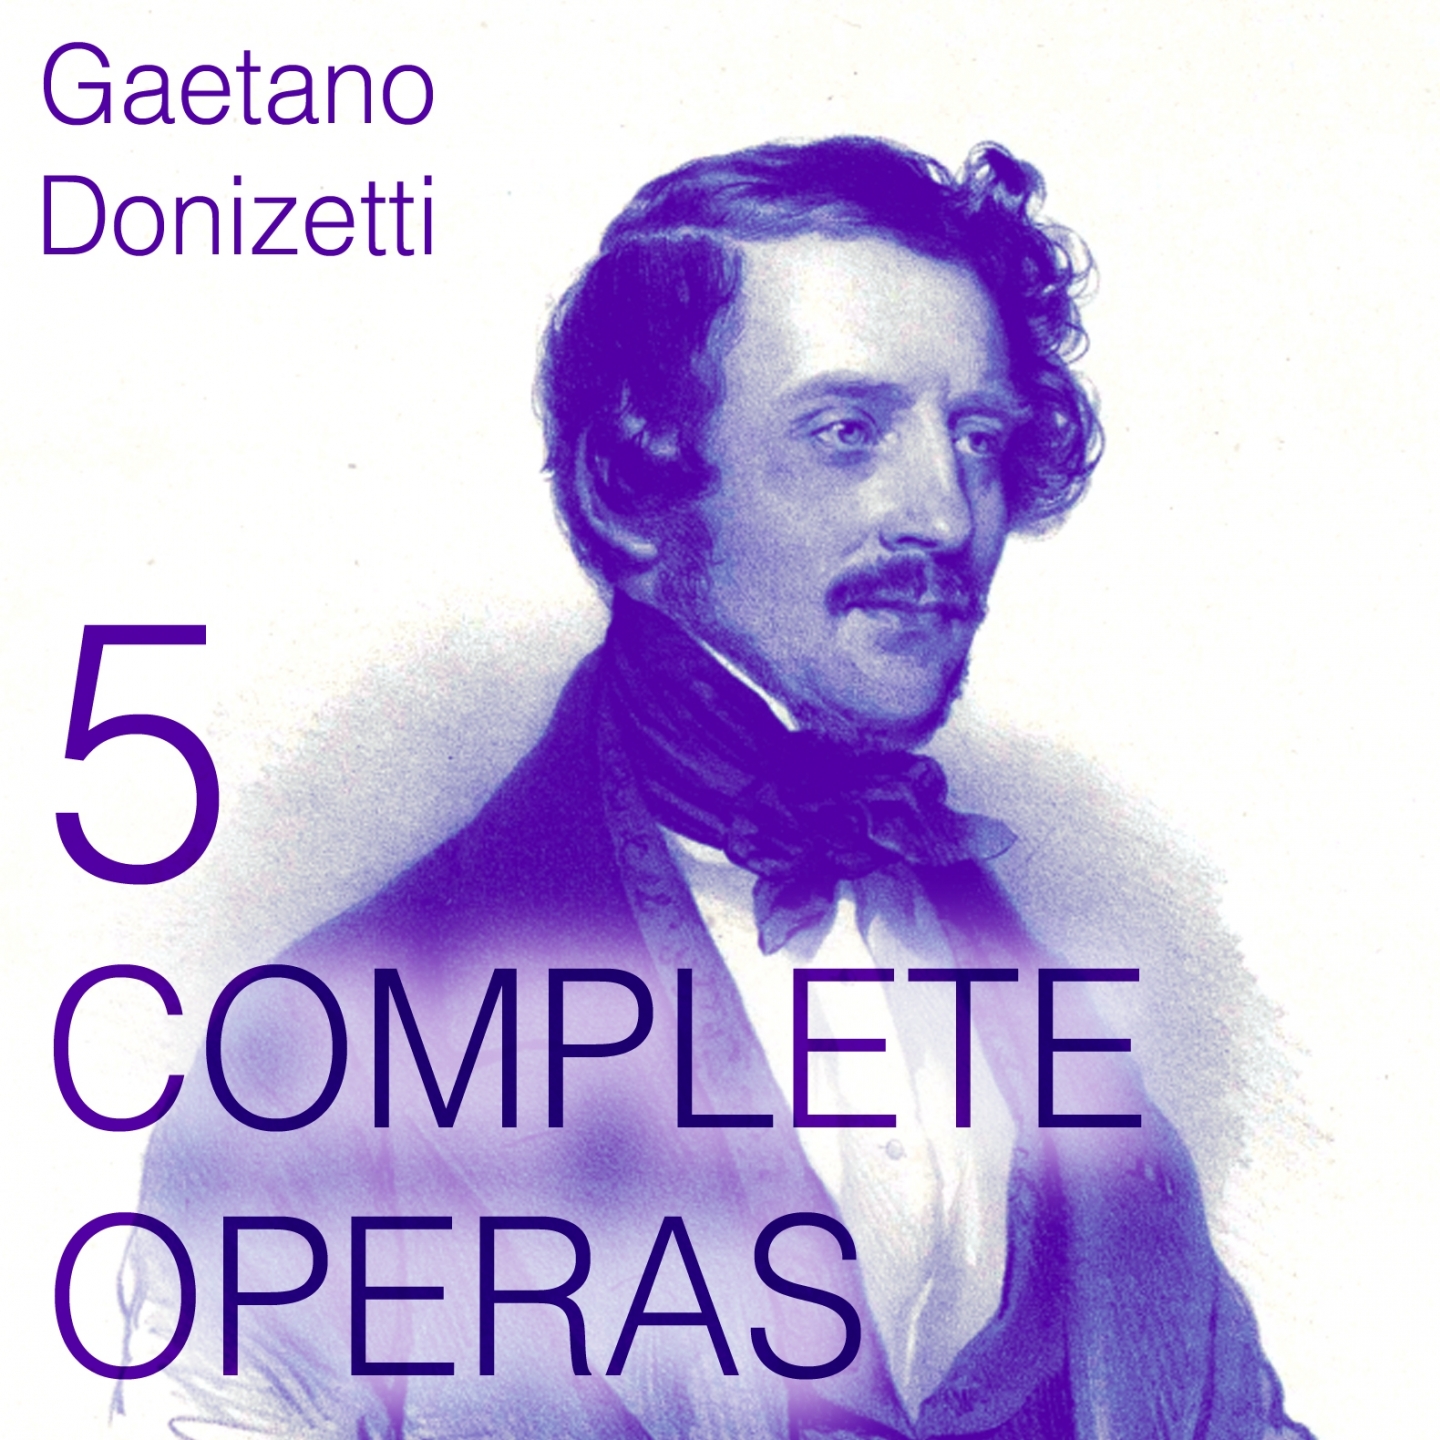 Donizetti: 5 Complete Operas